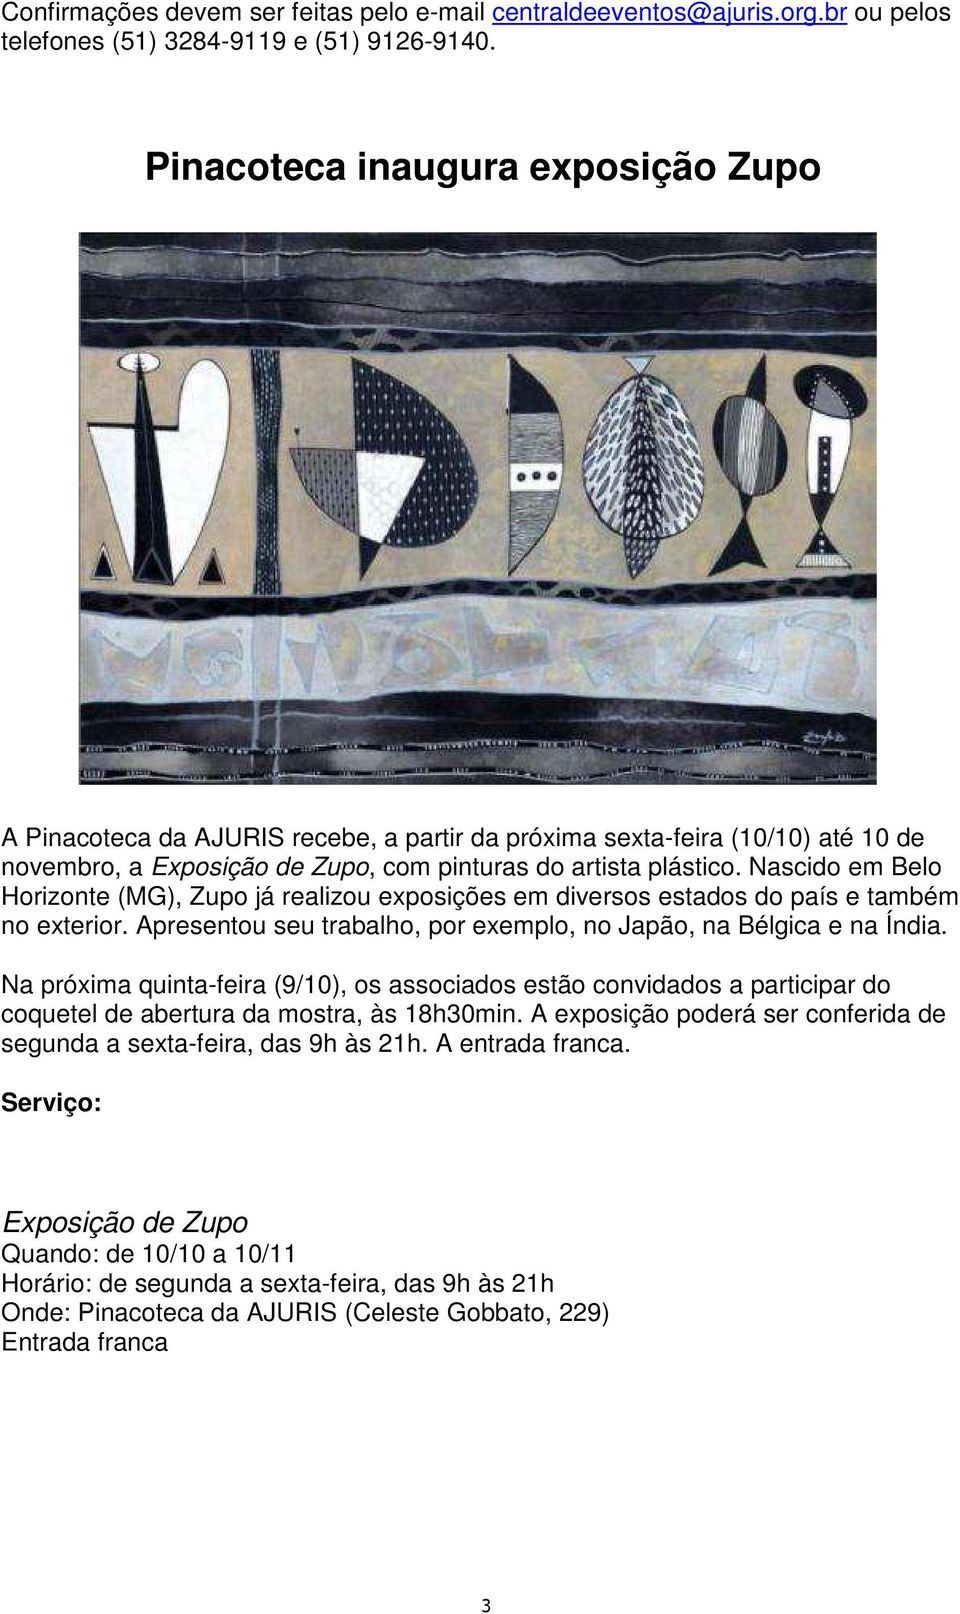 Nascido em Belo Horizonte (MG), Zupo já realizou exposições em diversos estados do país e também no exterior. Apresentou seu trabalho, por exemplo, no Japão, na Bélgica e na Índia.